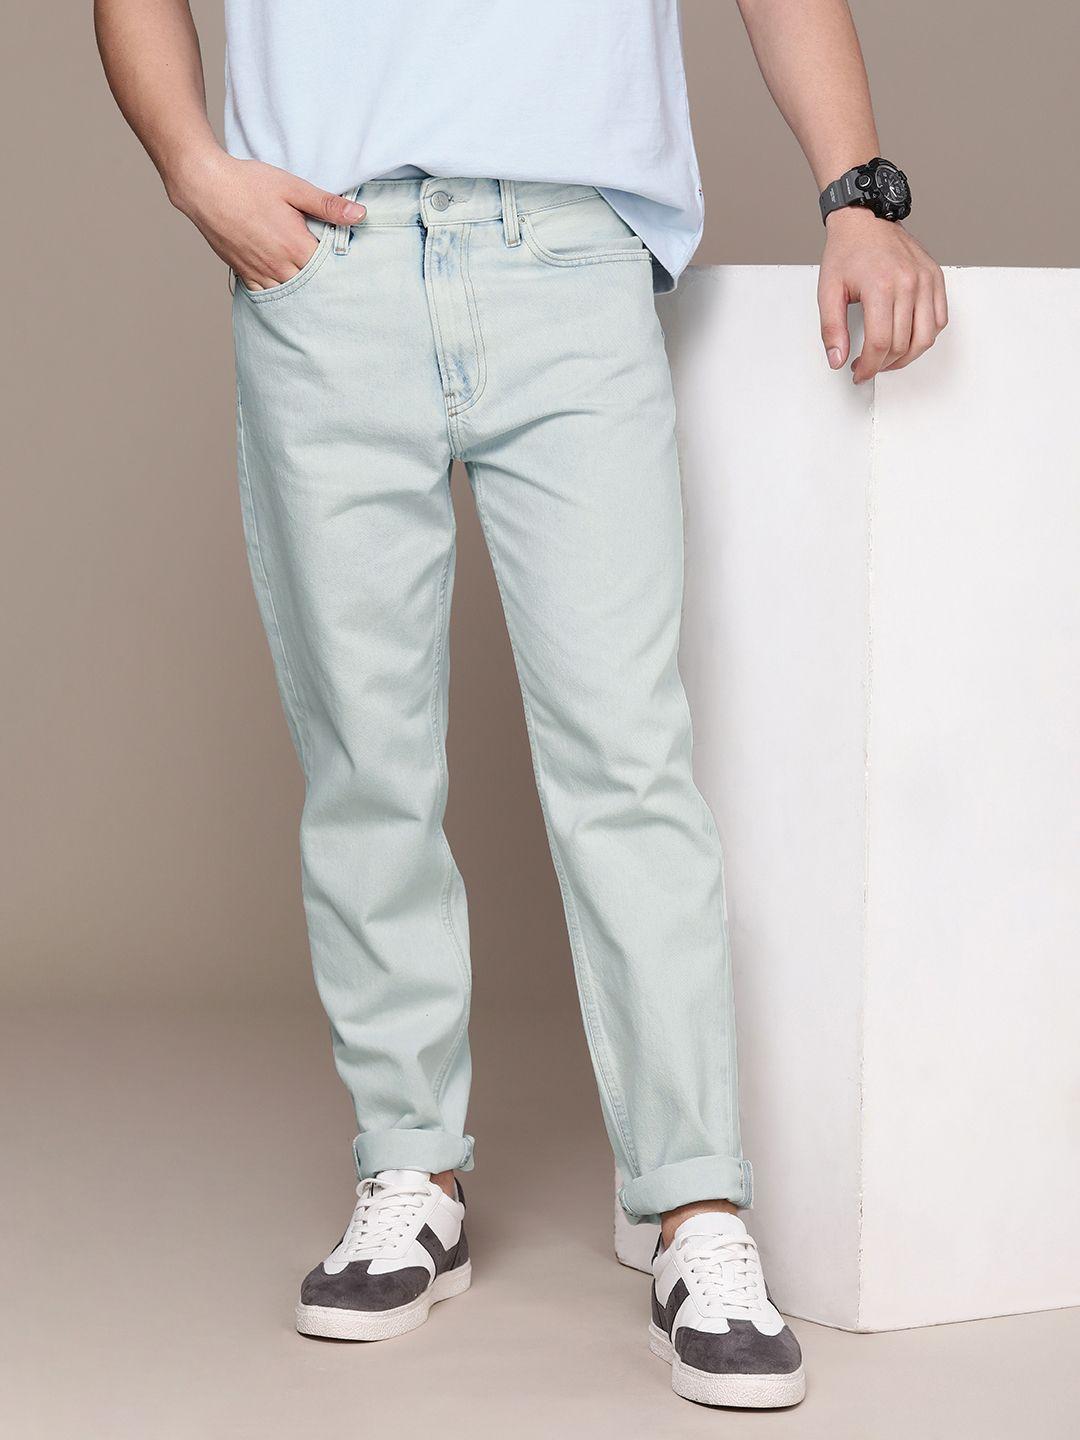 calvin-klein-jeans-men-pure-cotton-jeans